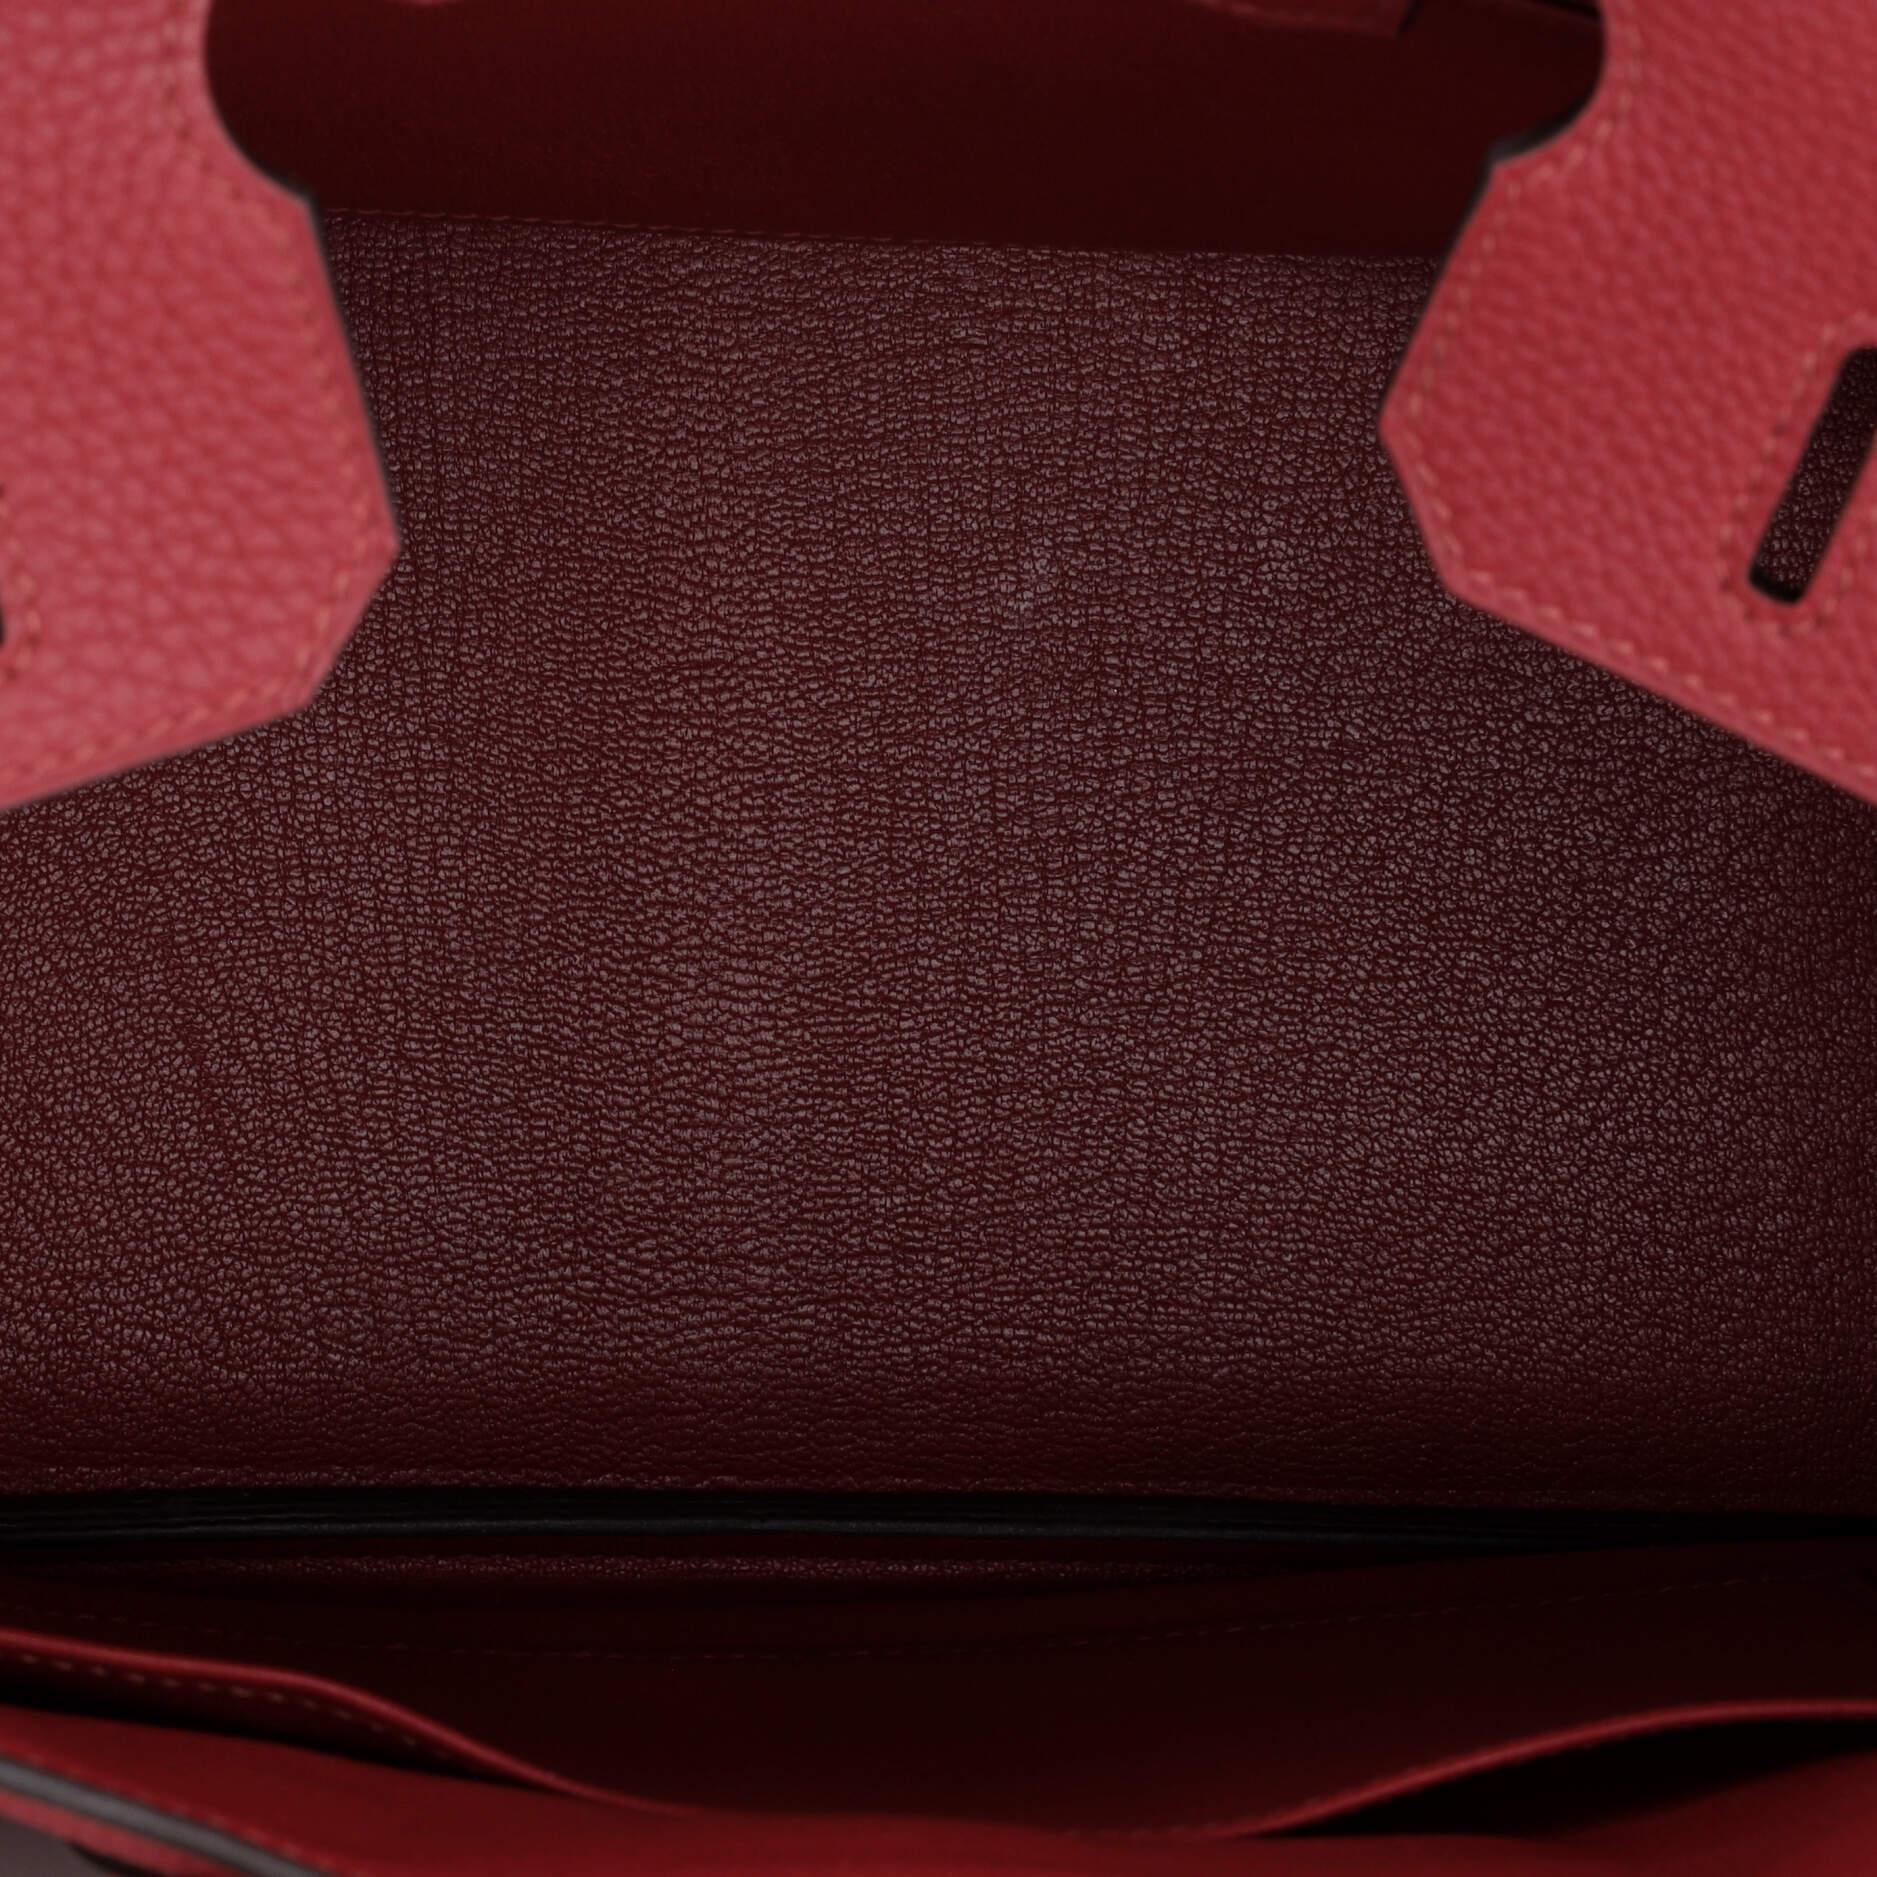 Hermes Birkin Handbag Rouge Grenat Togo with Gold Hardware 30 2